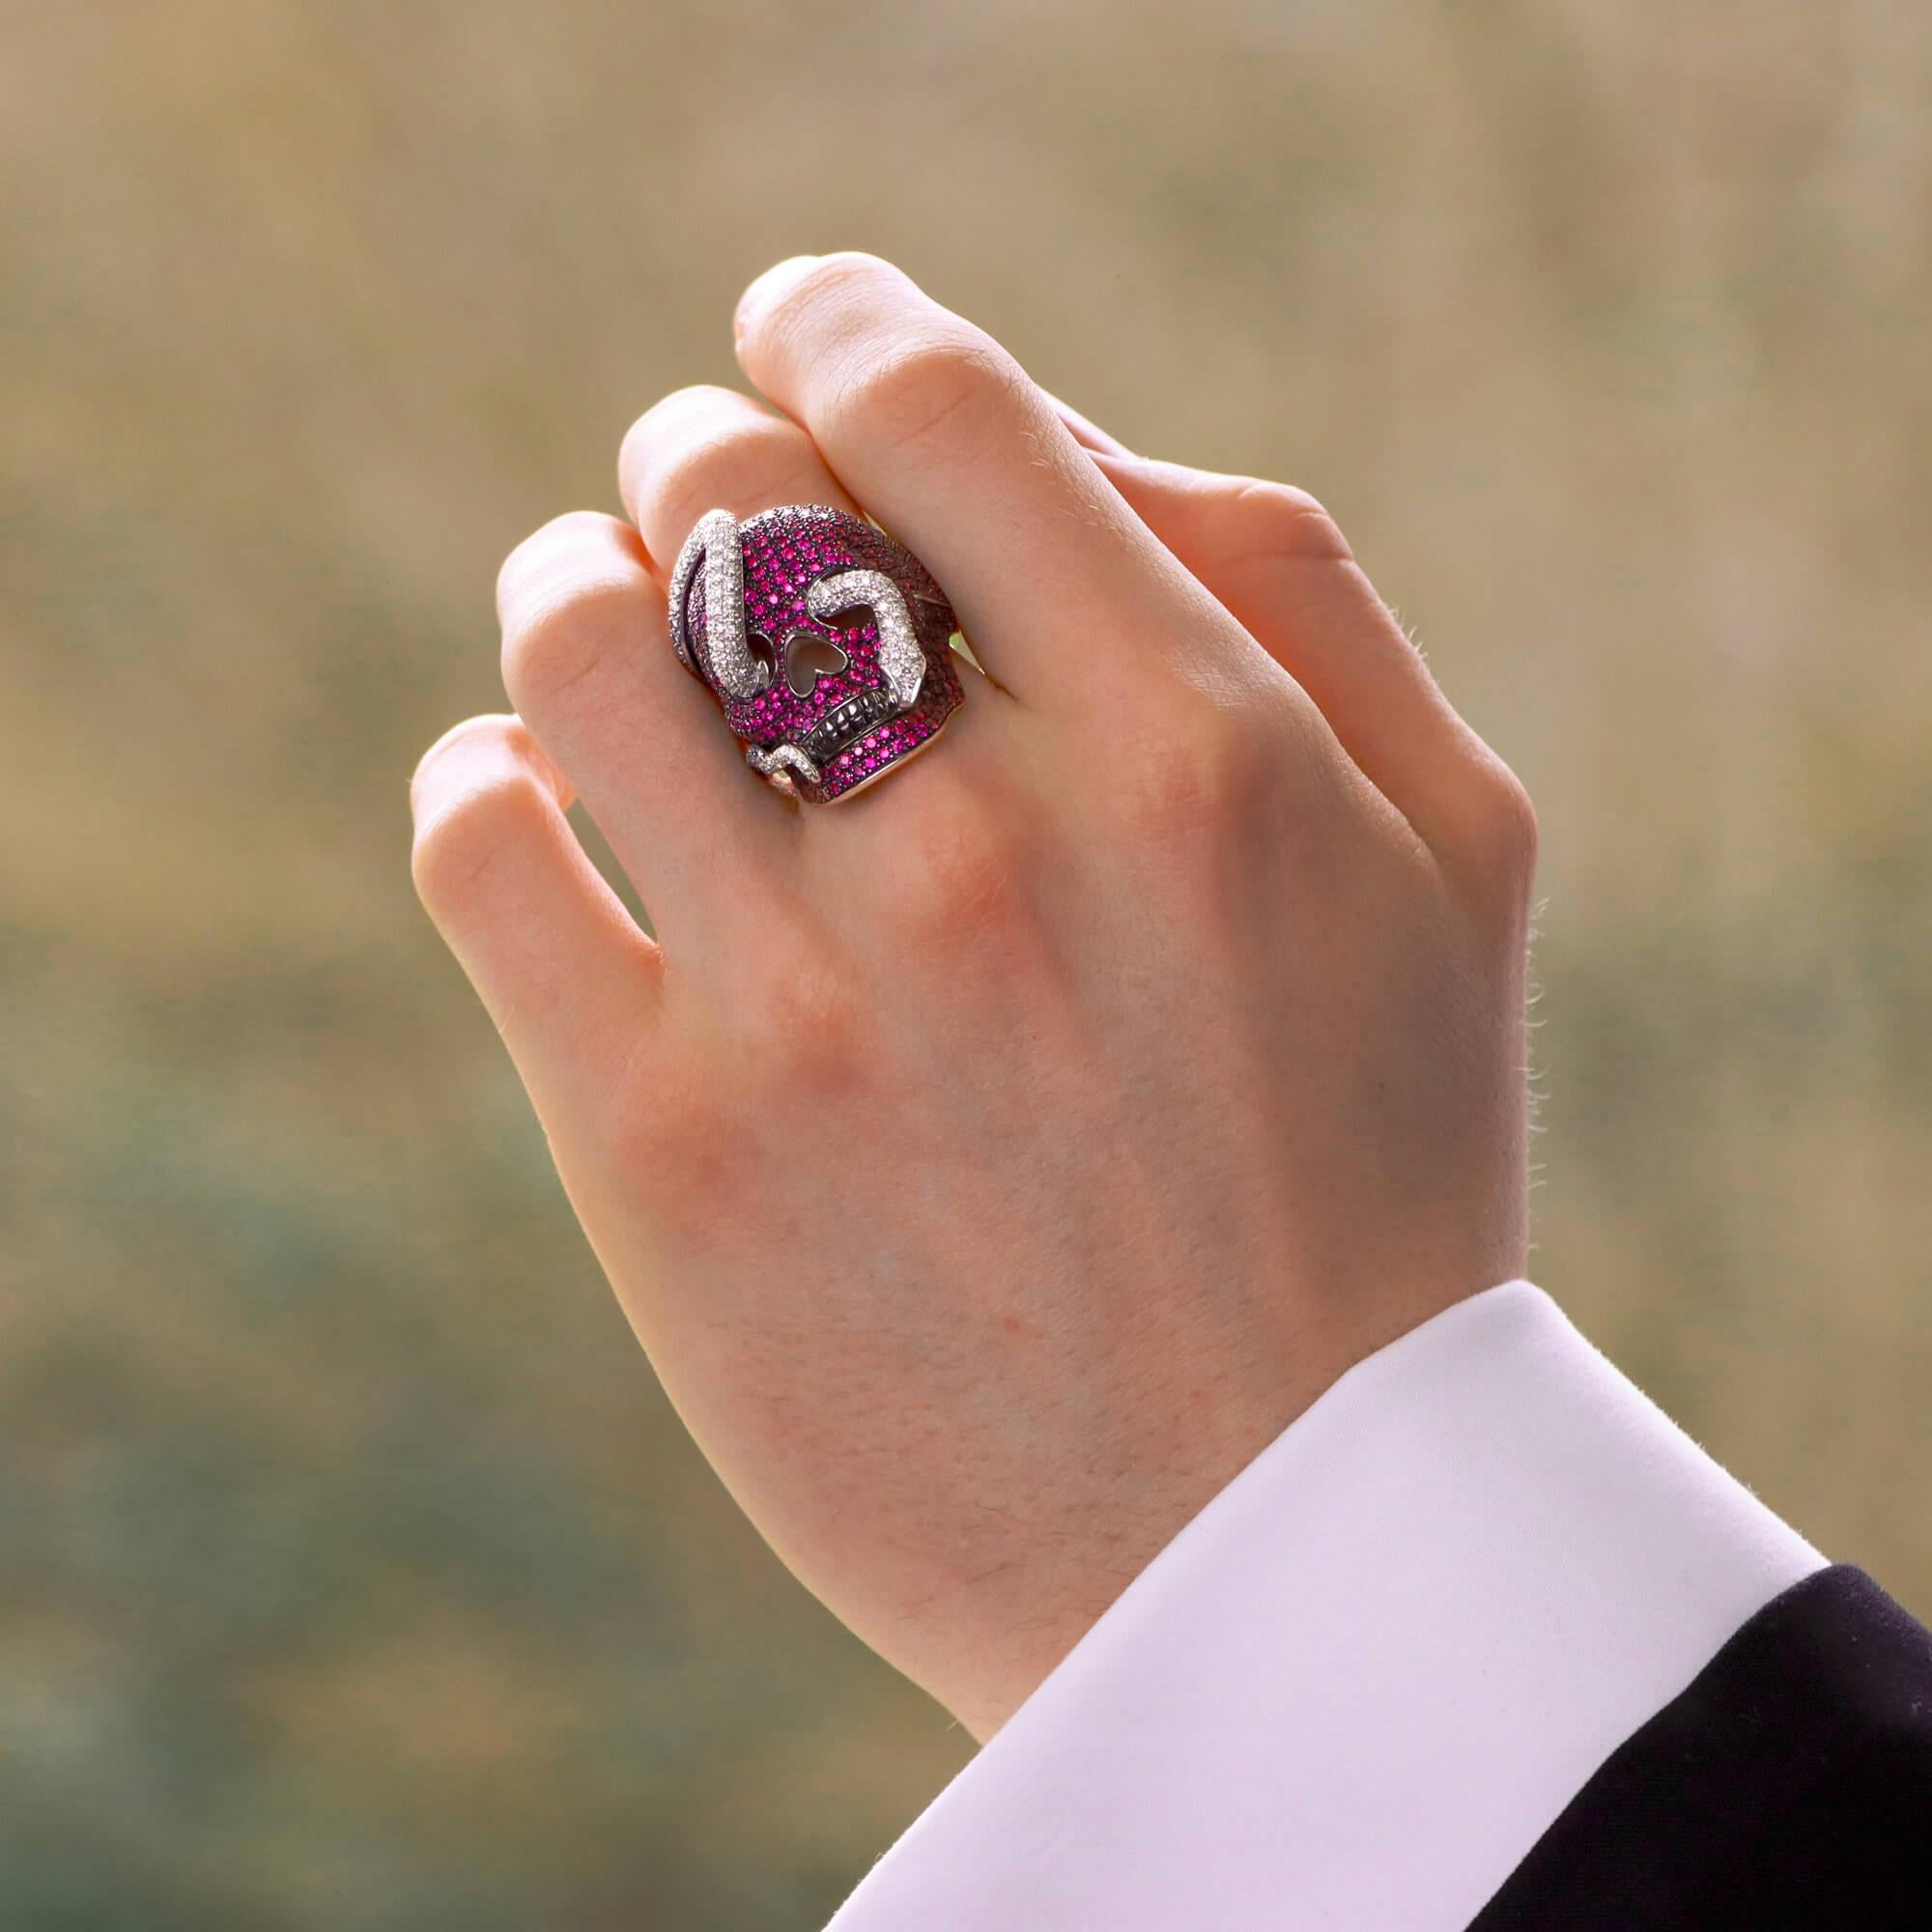 Ein sehr auffälliger Ring von Theo Fennell mit einem Rubin und einem Diamanten als Totenkopf und Schlange, gefasst in 18 Karat Weißgold. 

Der Ring besteht zunächst aus einem rhodinierten Totenkopf, der durchgehend mit schönen Rubinen im Rundschliff